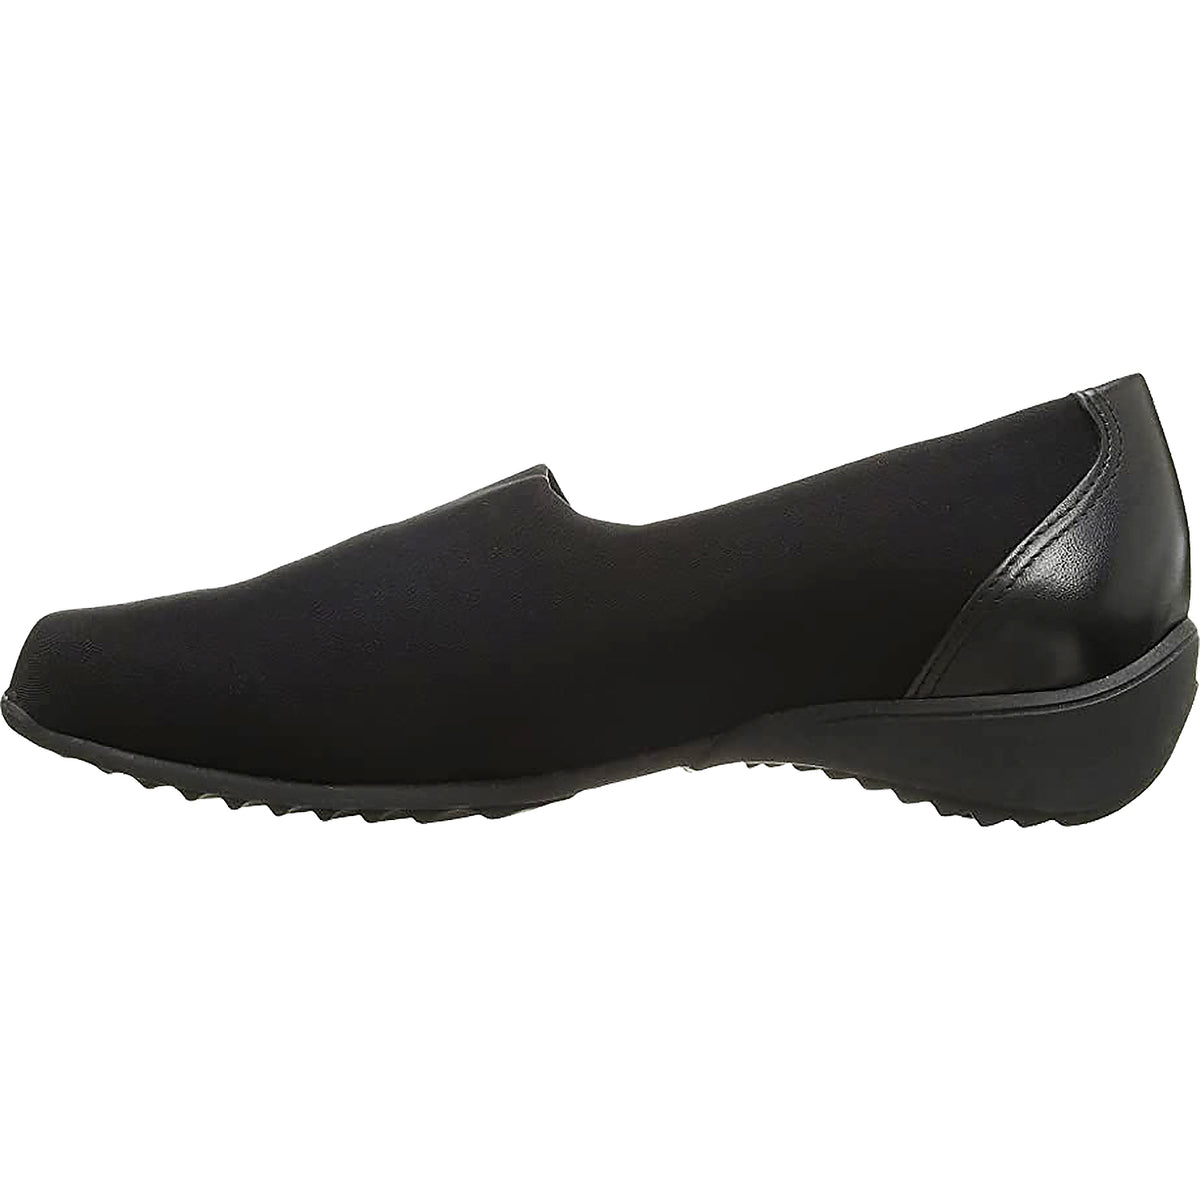 Munro Traveler | Women's Slip-On Shoes | Footwear etc.